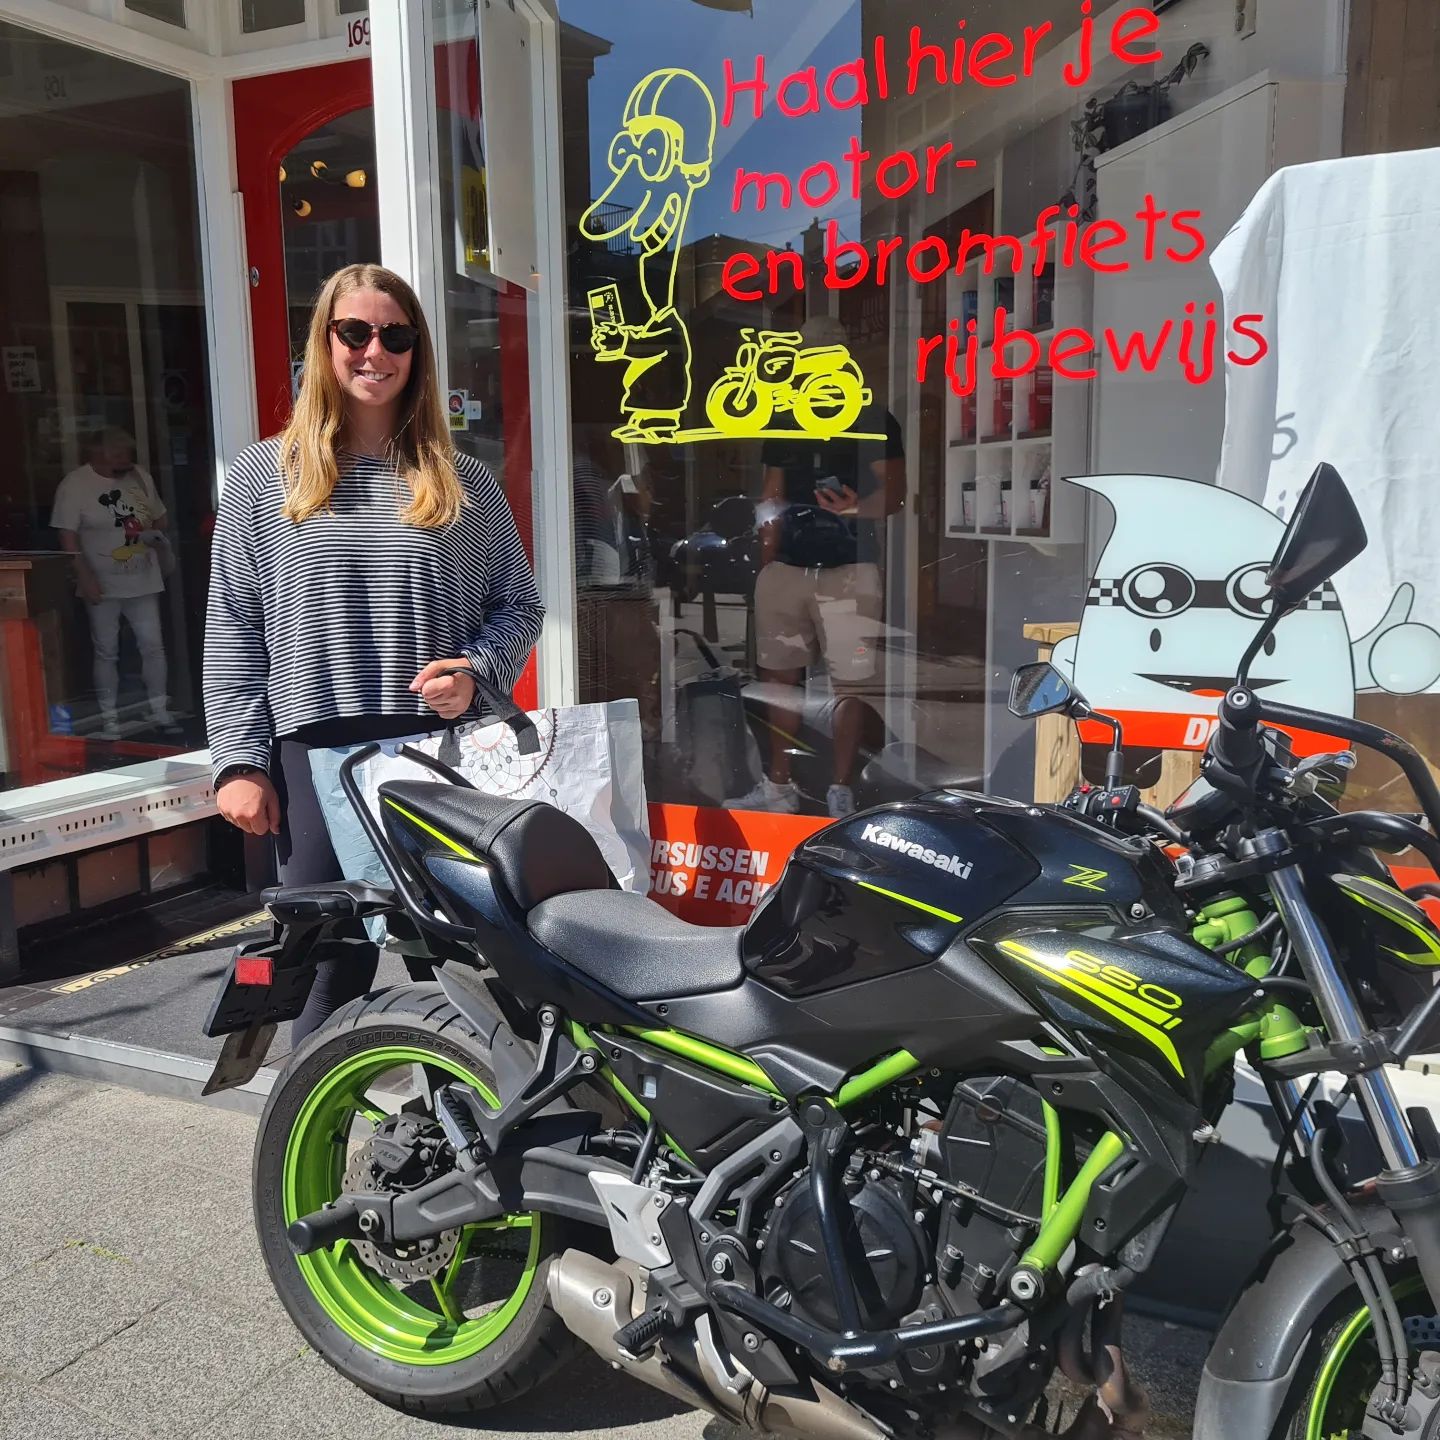 Top gedaan Nina! Het heeft even geduurd maar eindelijk mag je lekker zelfstandig rijden 🏍👌☀️😎...#verkeersschoolderidder #scheveningen #denhaag #hoogslagingspercentage👍 #avd #examen #examinator #Leiden #mooieomgeving #makkelijker #rijden #dichterbijook #n44 #a44 #bollenstreek #Noordwijk #Voorhout #Sassenheim #Oegstgeest #Rijnsburg #mooiweertje☀️ #motor #motorrijden #motorrijles #motorrijbewijs #bikelife #awayoflife